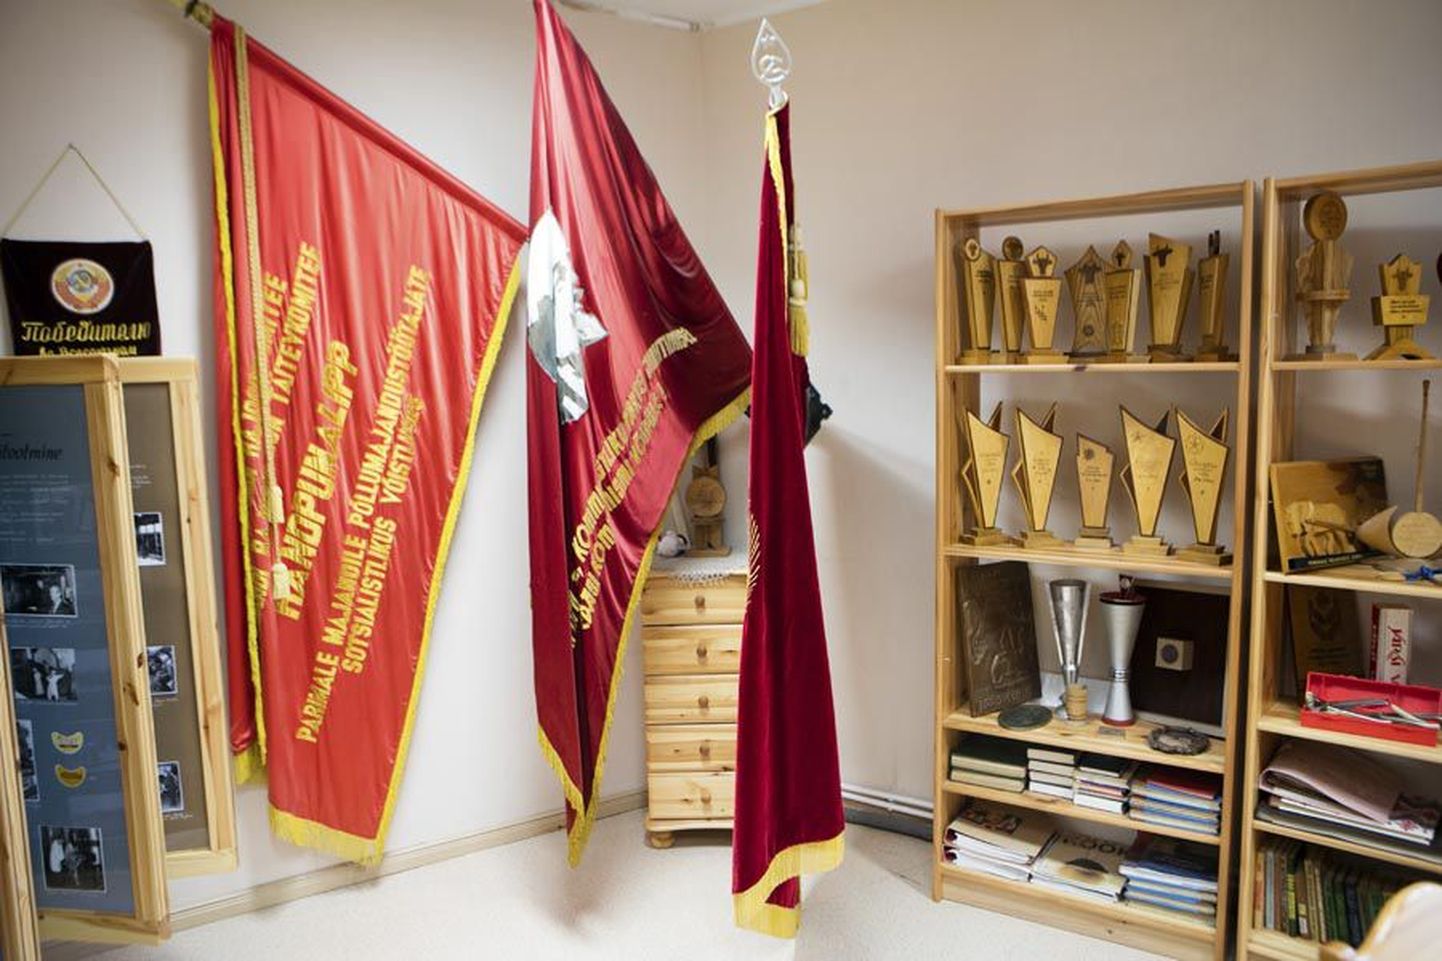 Karksi külamajas on nõukogudeaegsetele esemetele eraldi tuba. Ekspositsiooni selgroo moodustavad omaaegse Karksi kolhoosi lipud ja auhinnad.